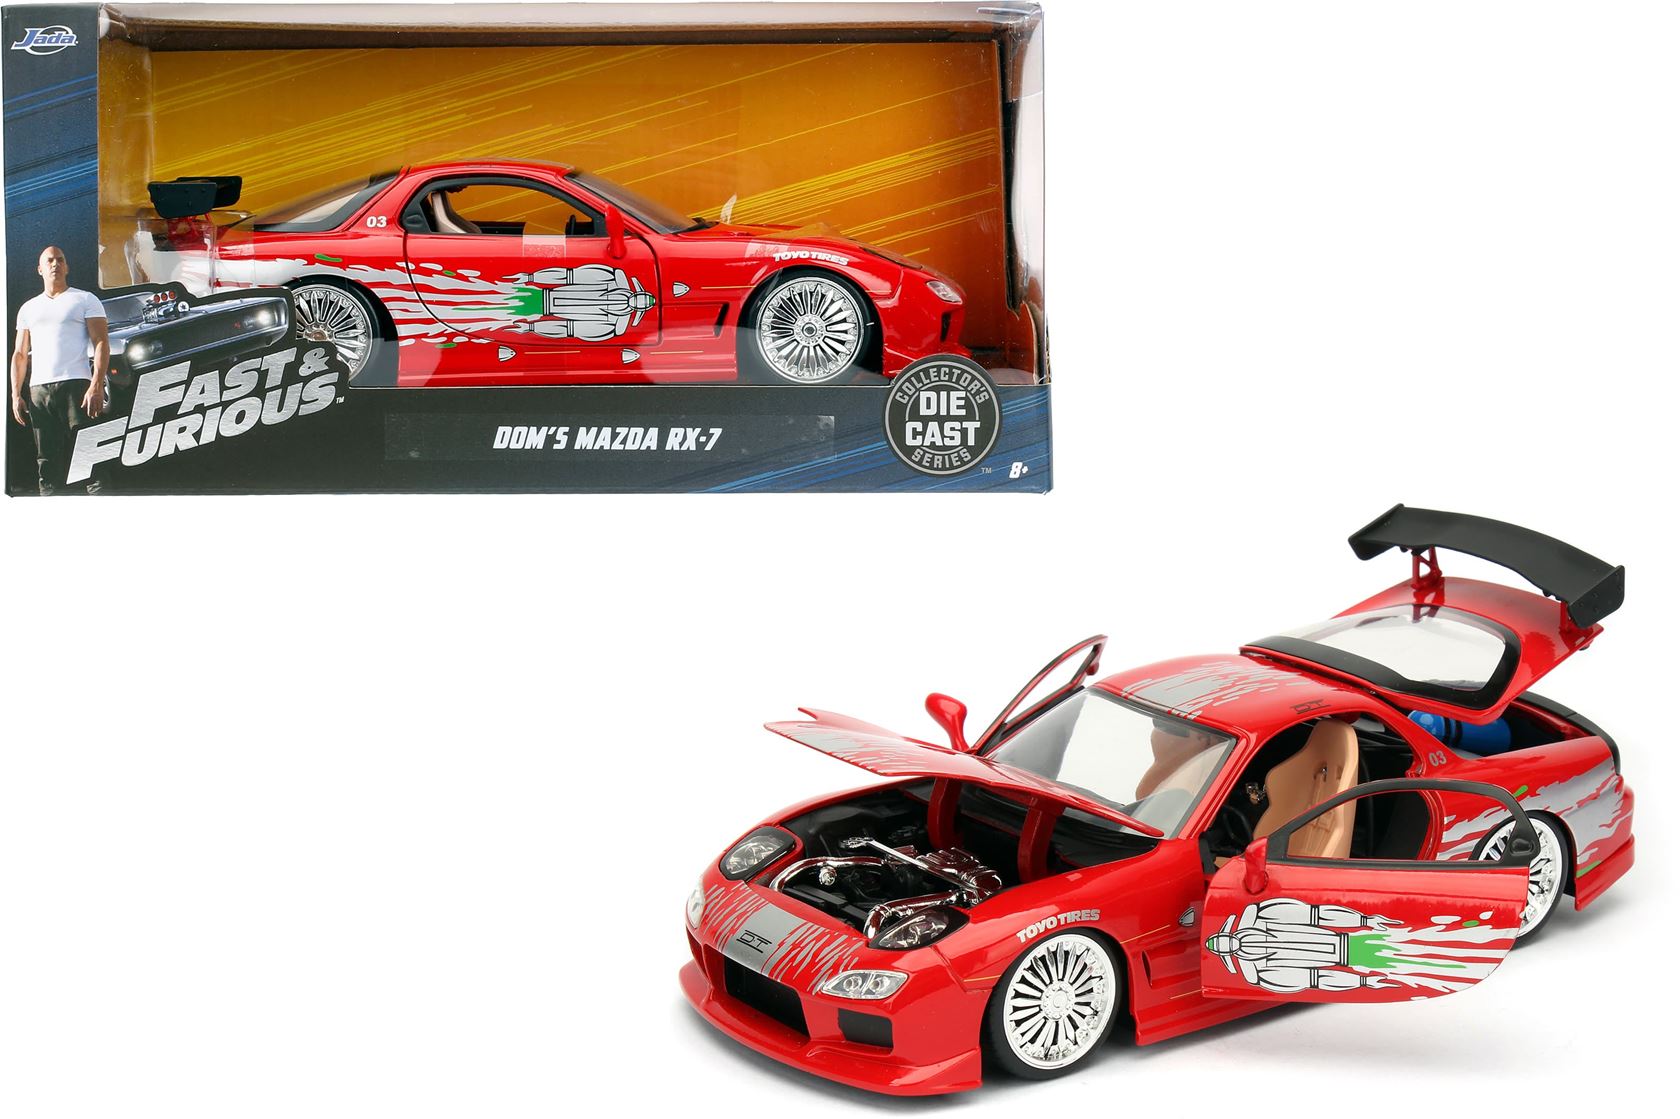 Fast-Furious-1993-Mazda-RX-7-1-24